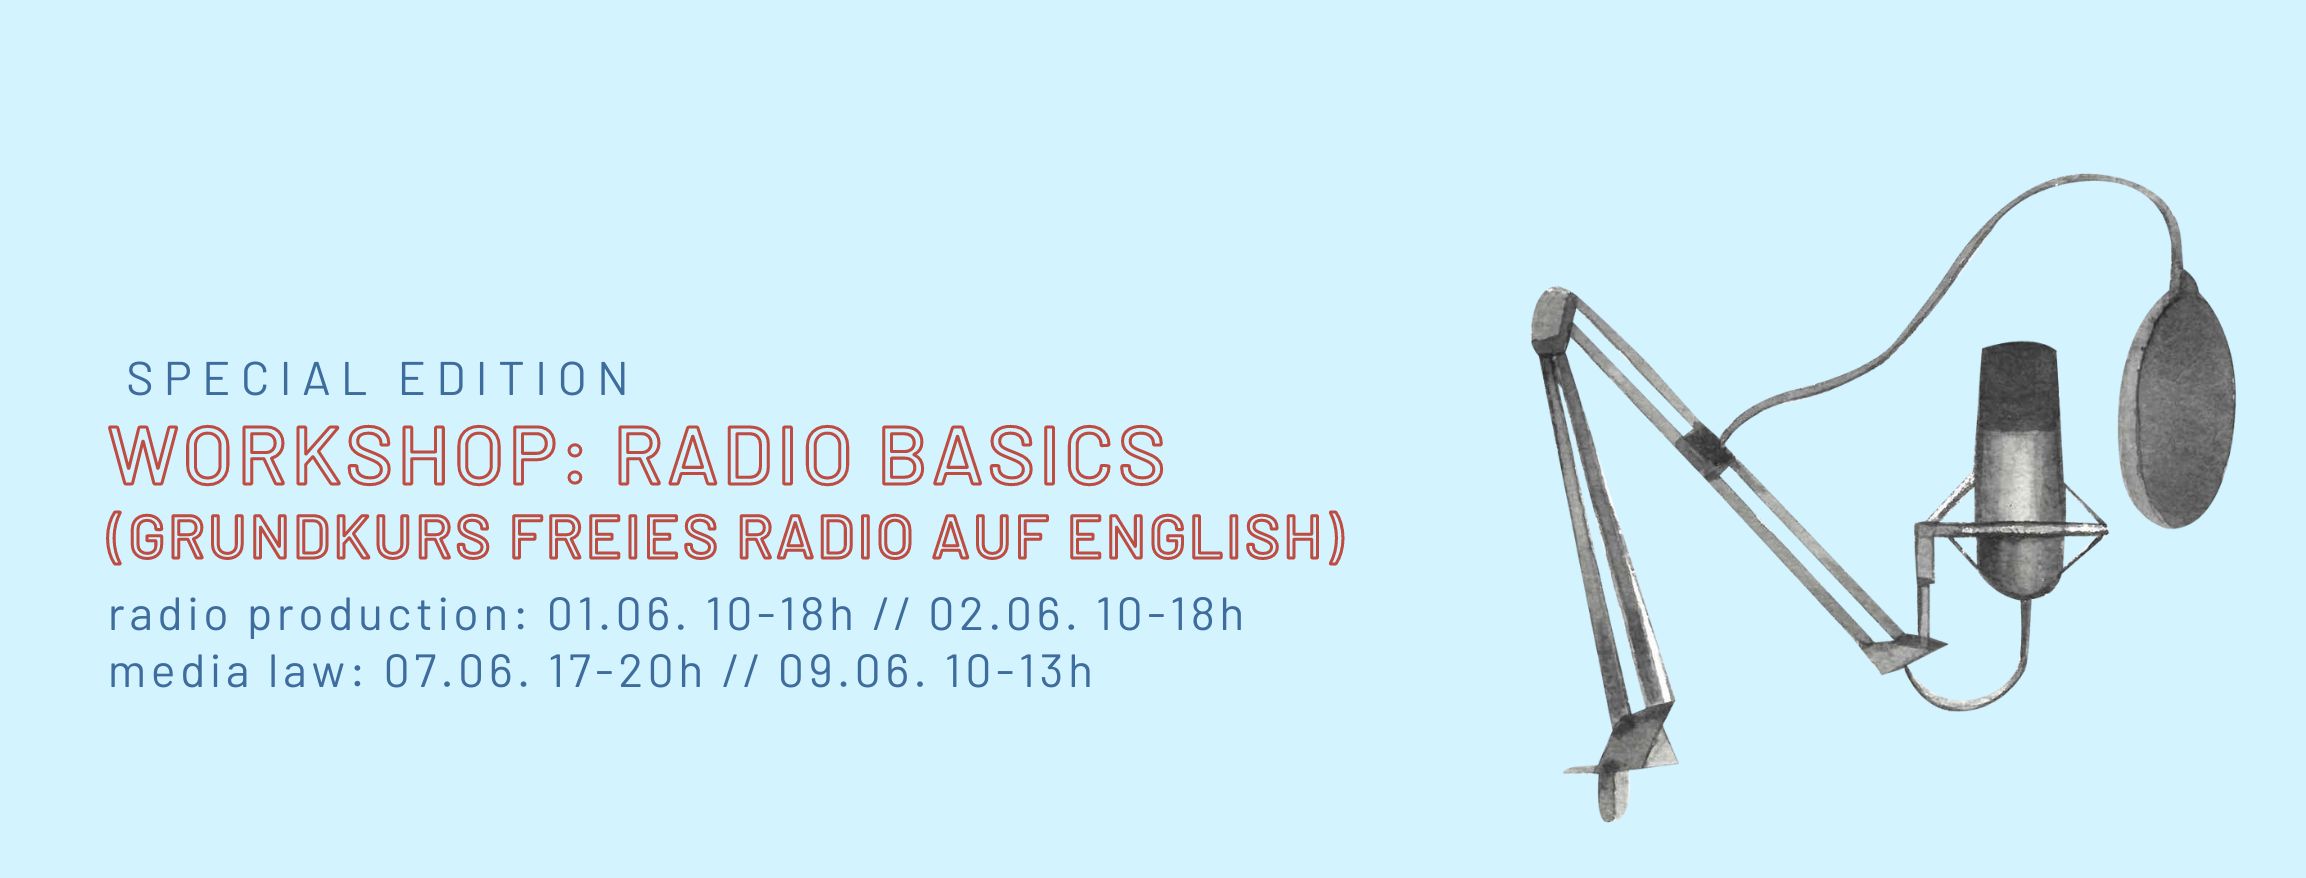 Banner mit dem Text "Radio Basics  - radio production: 01.06. 10-18h // 02.06. 10-18h  media law: 07.06. 17-20h // 09.06. 10-13h" und der Grafik eines Mikros mit Plobschutz